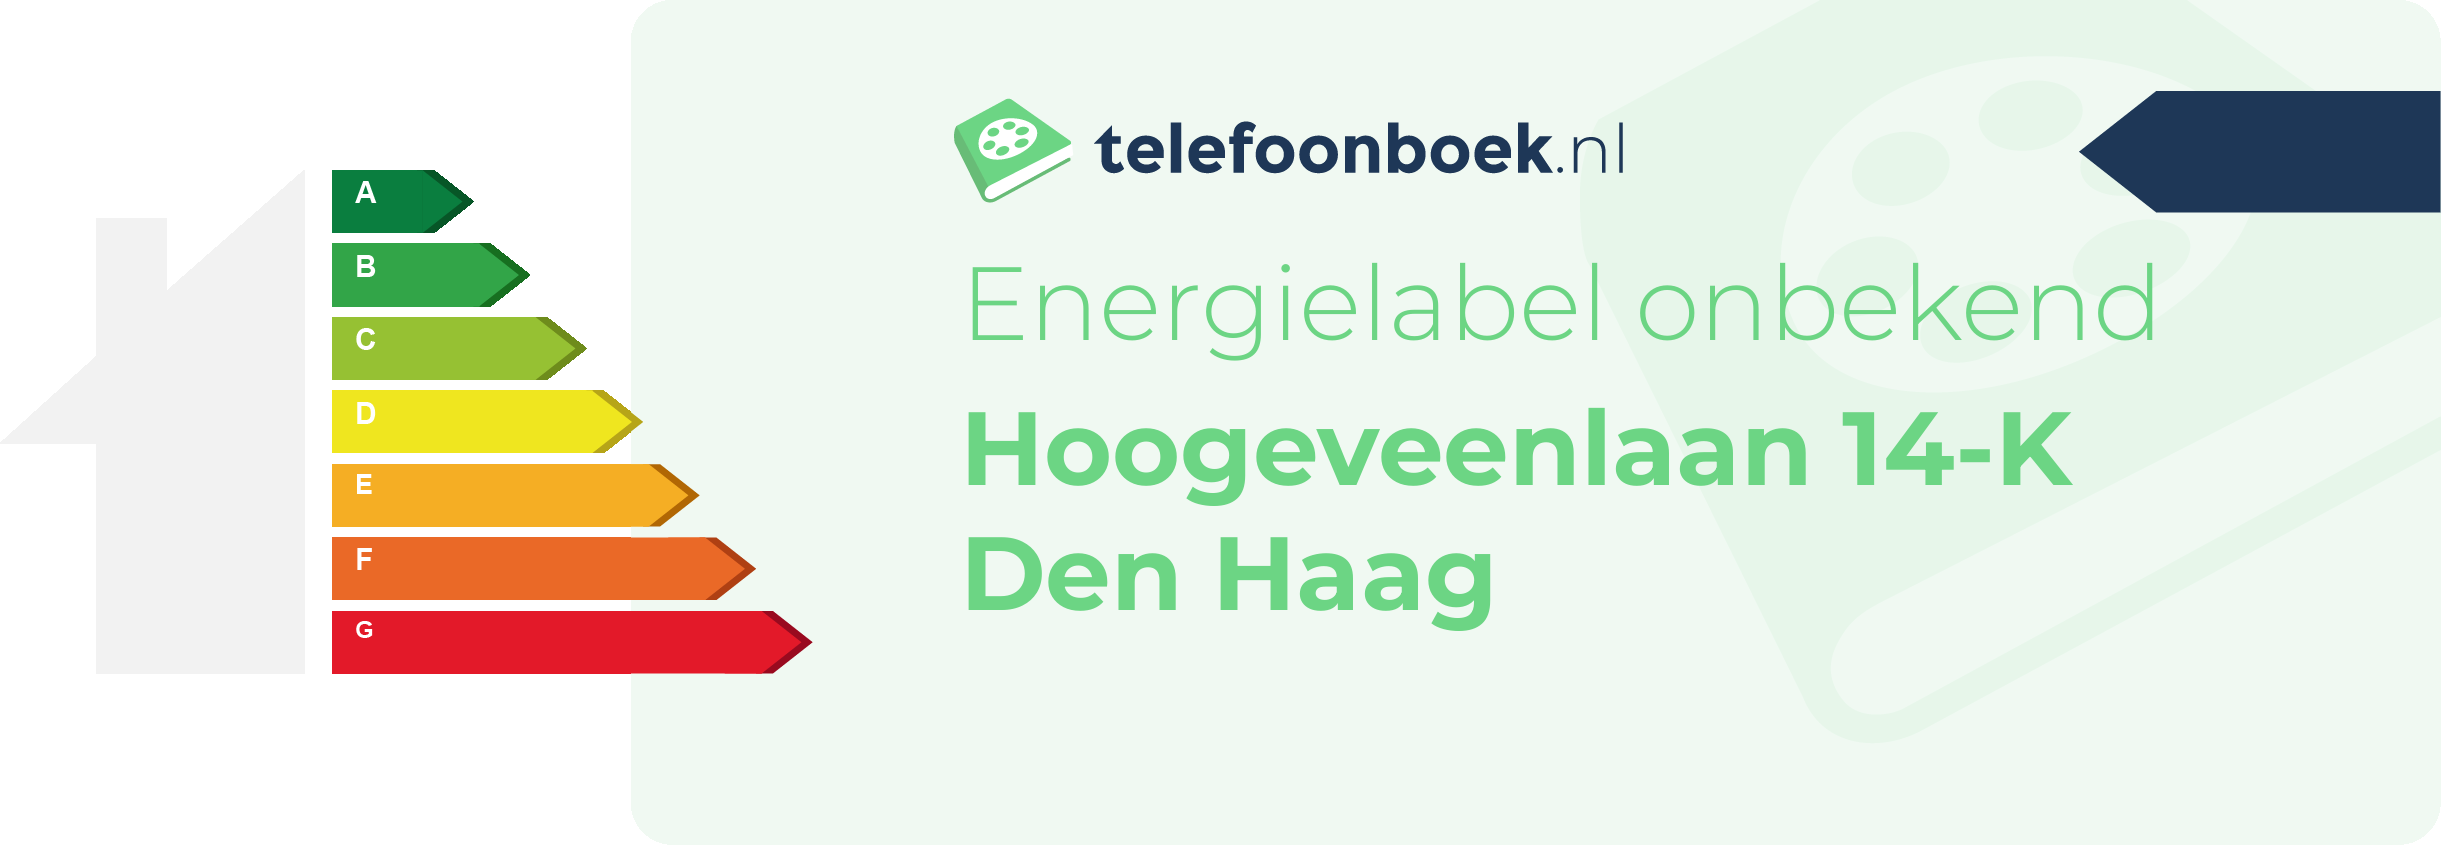 Energielabel Hoogeveenlaan 14-K Den Haag